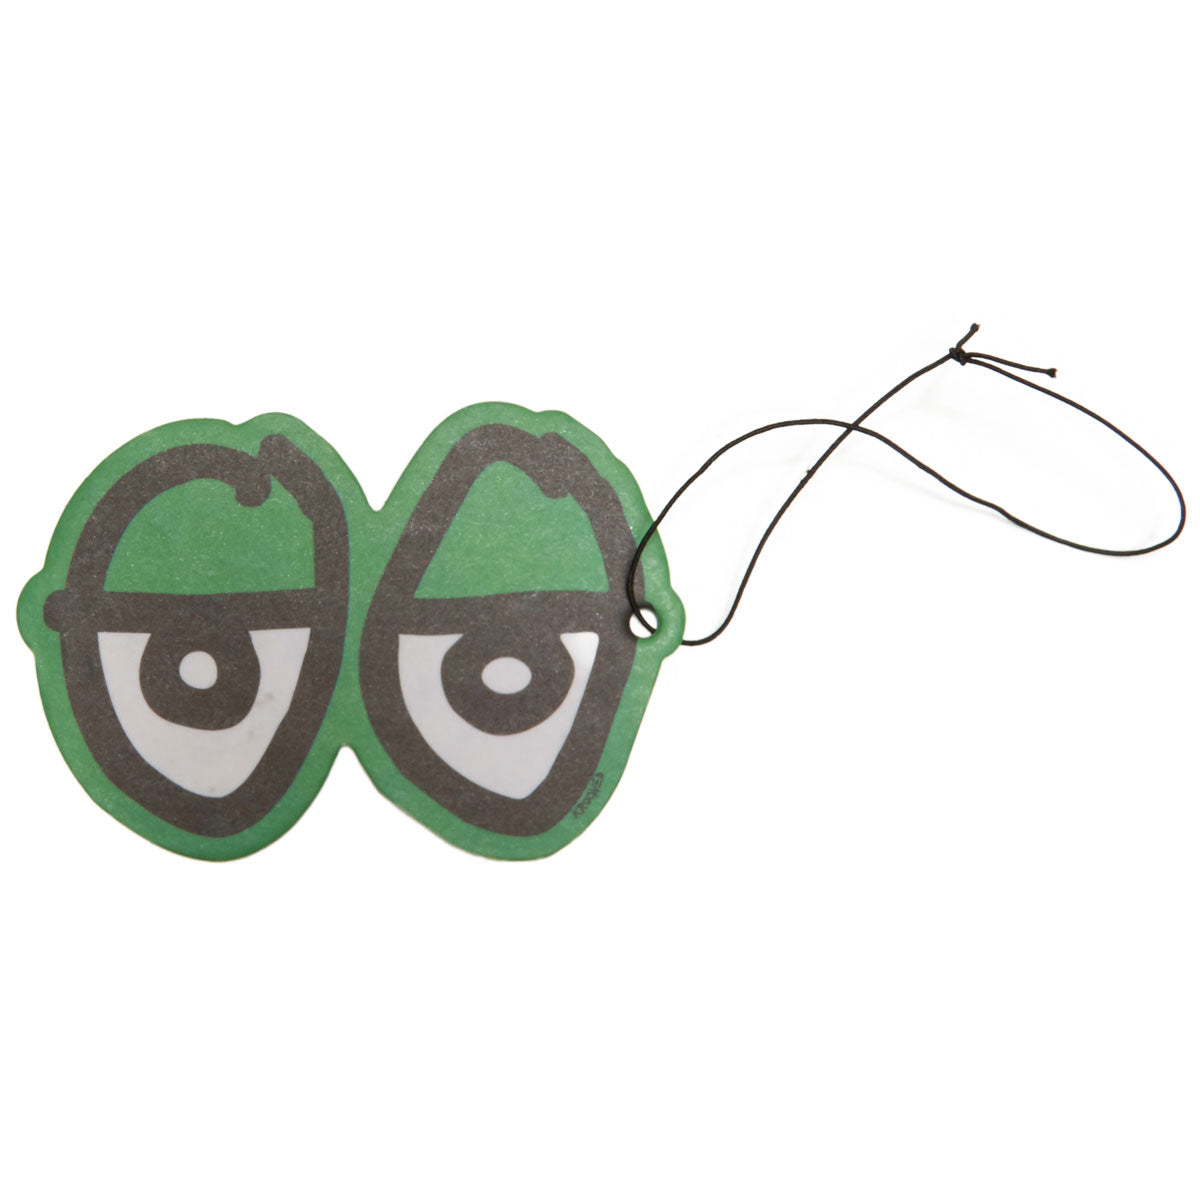 Krooked Eyes Air Freshener - Green image 1